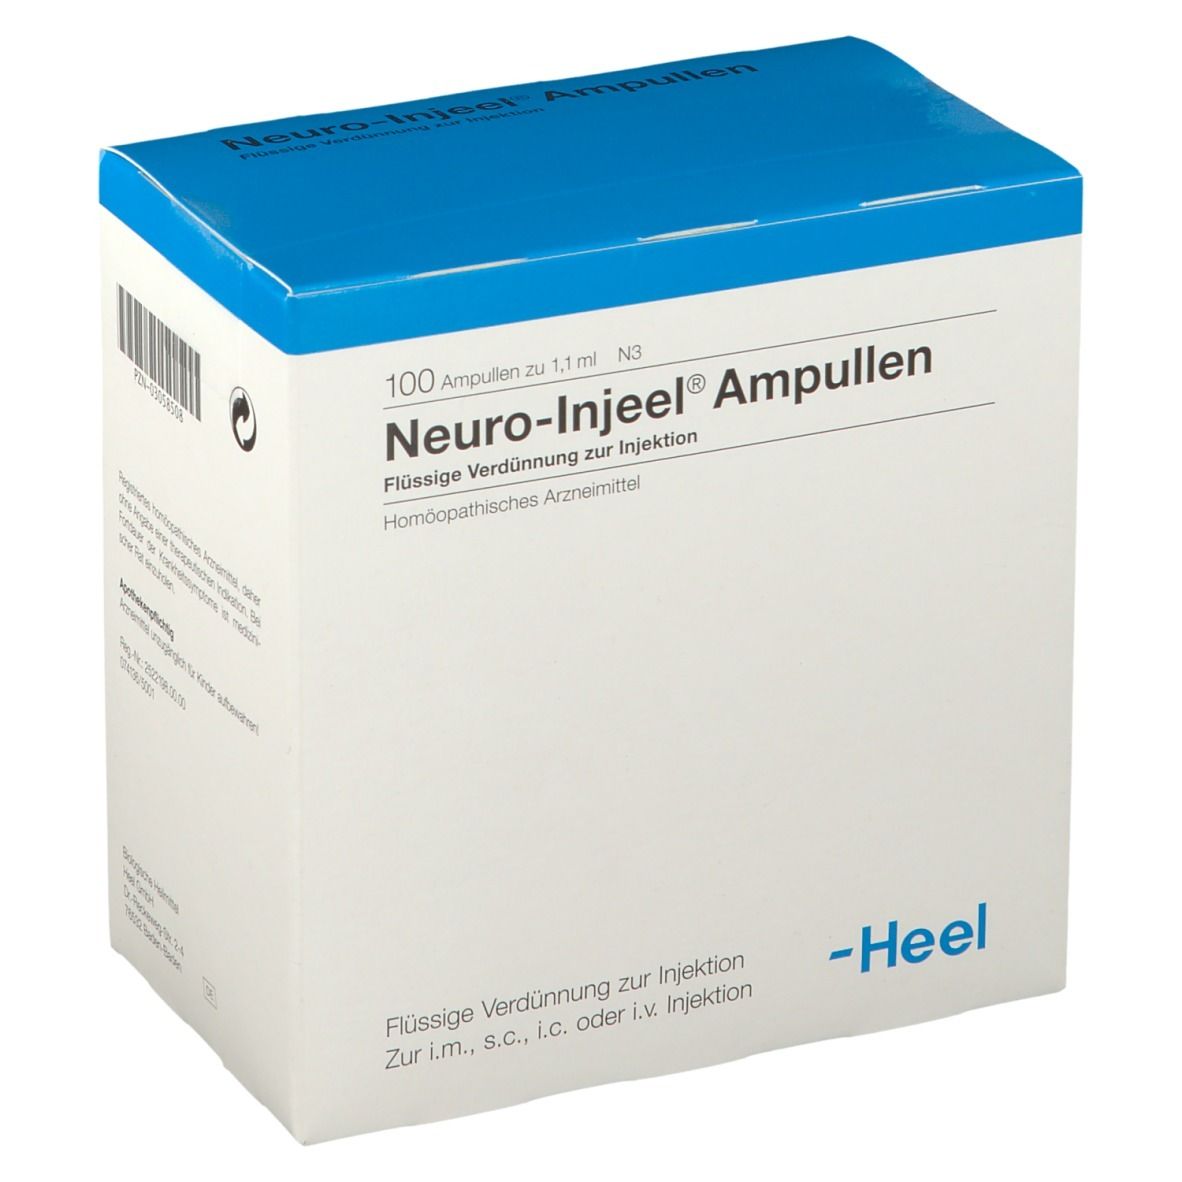 Neuro-Injeel® Ampullen